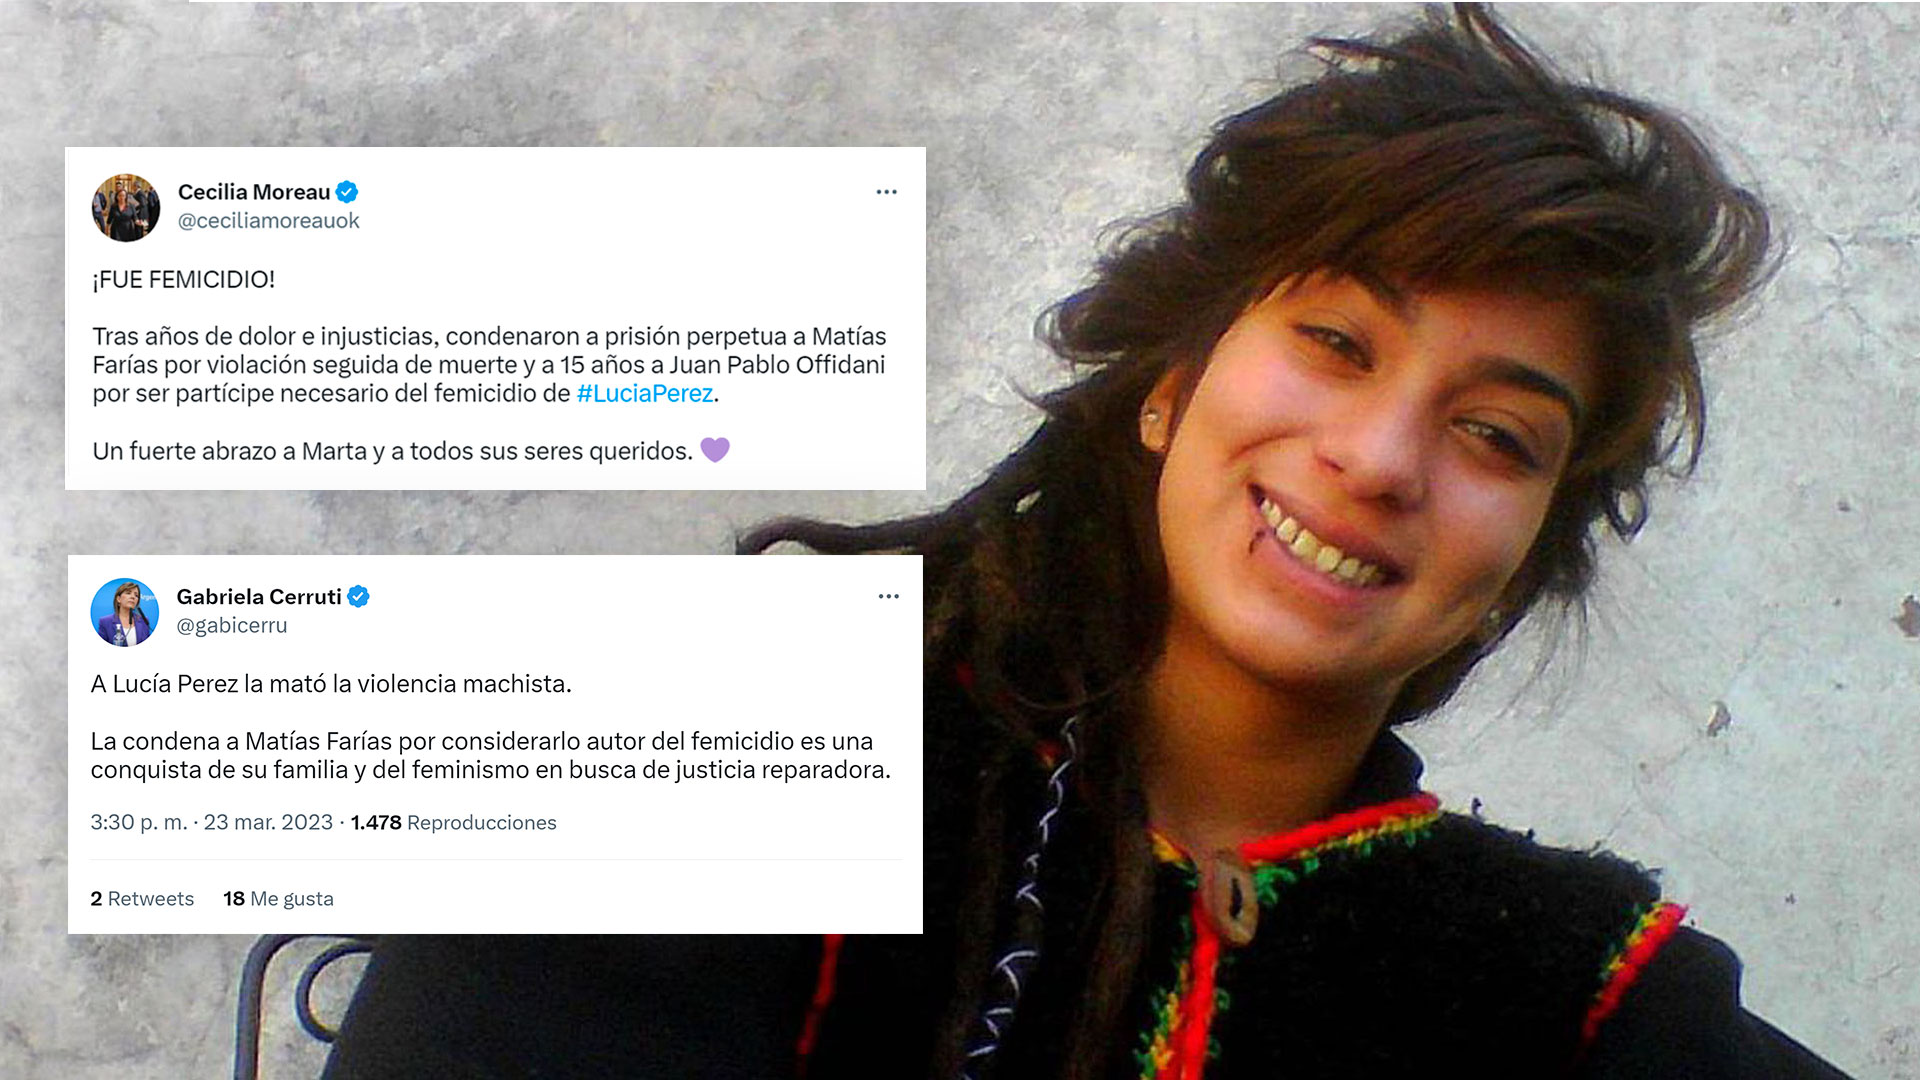 “La mató la violencia machista”: las repercusiones de dirigentes políticas tras la condena por el femicidio de Lucía Pérez